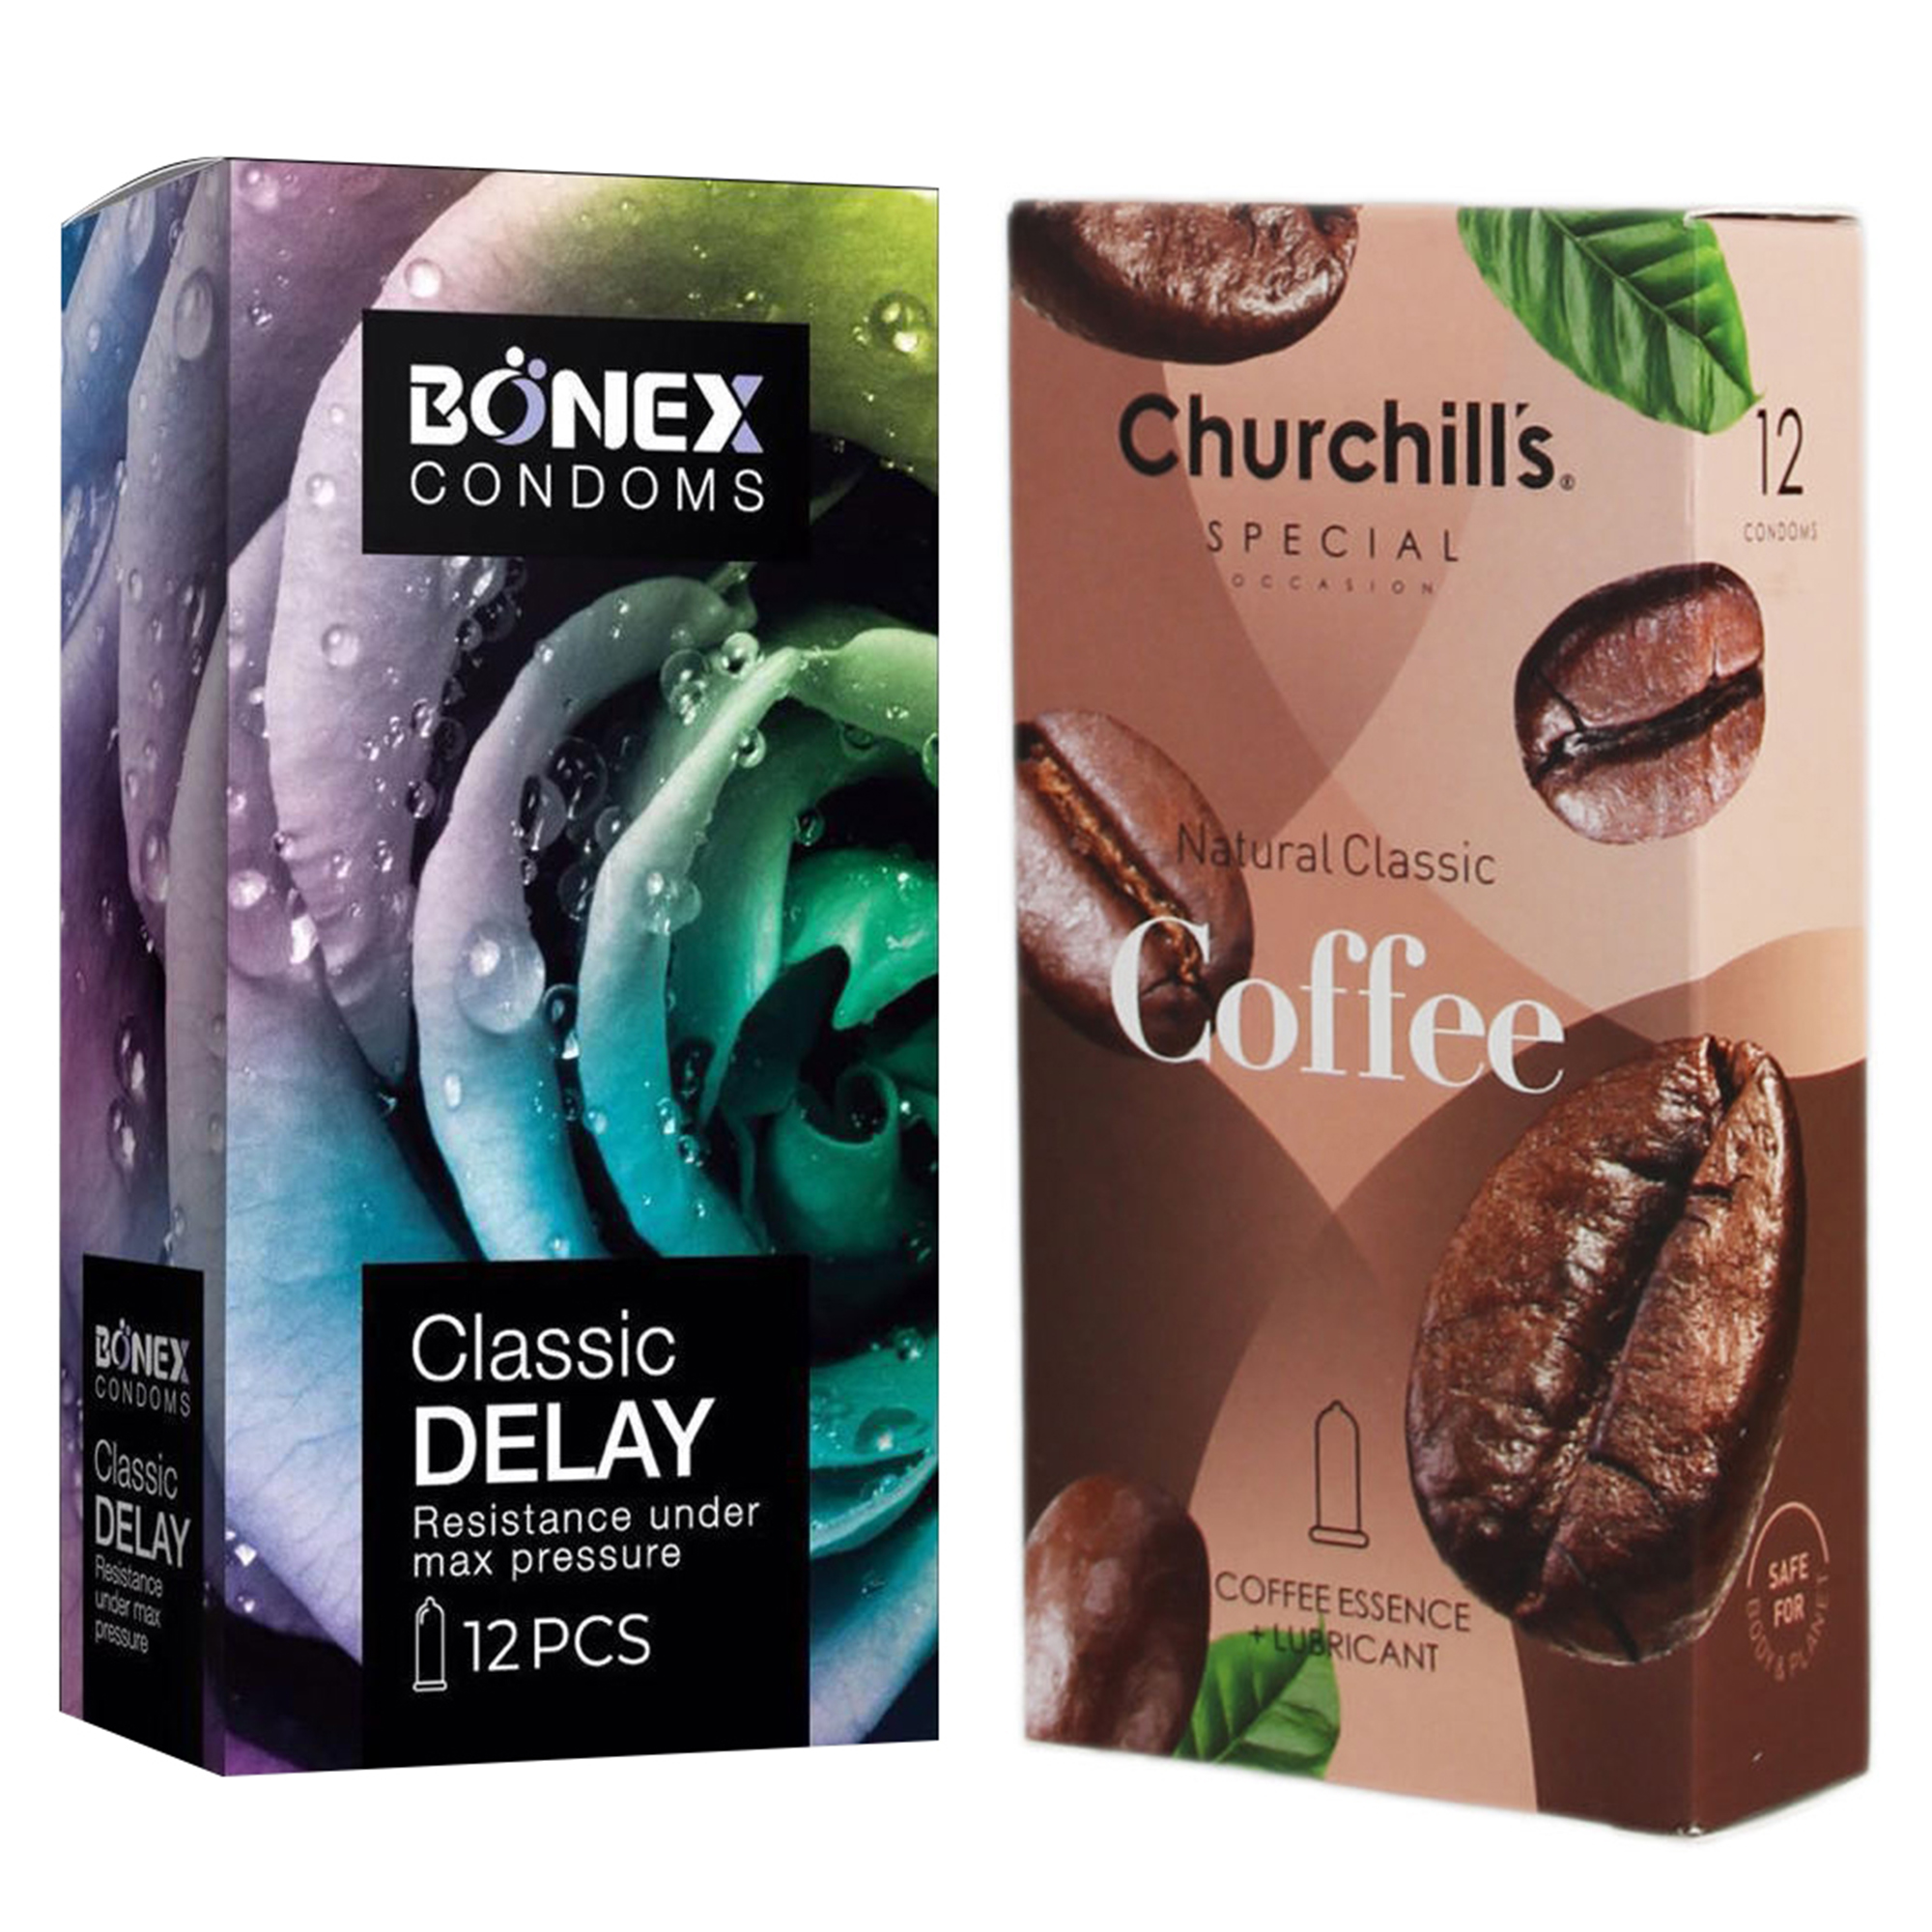 کاندوم چرچیلز مدل Coffee بسته 12 عددی به همراه کاندوم بونکس مدل Classic Delay بسته 12 عددی 